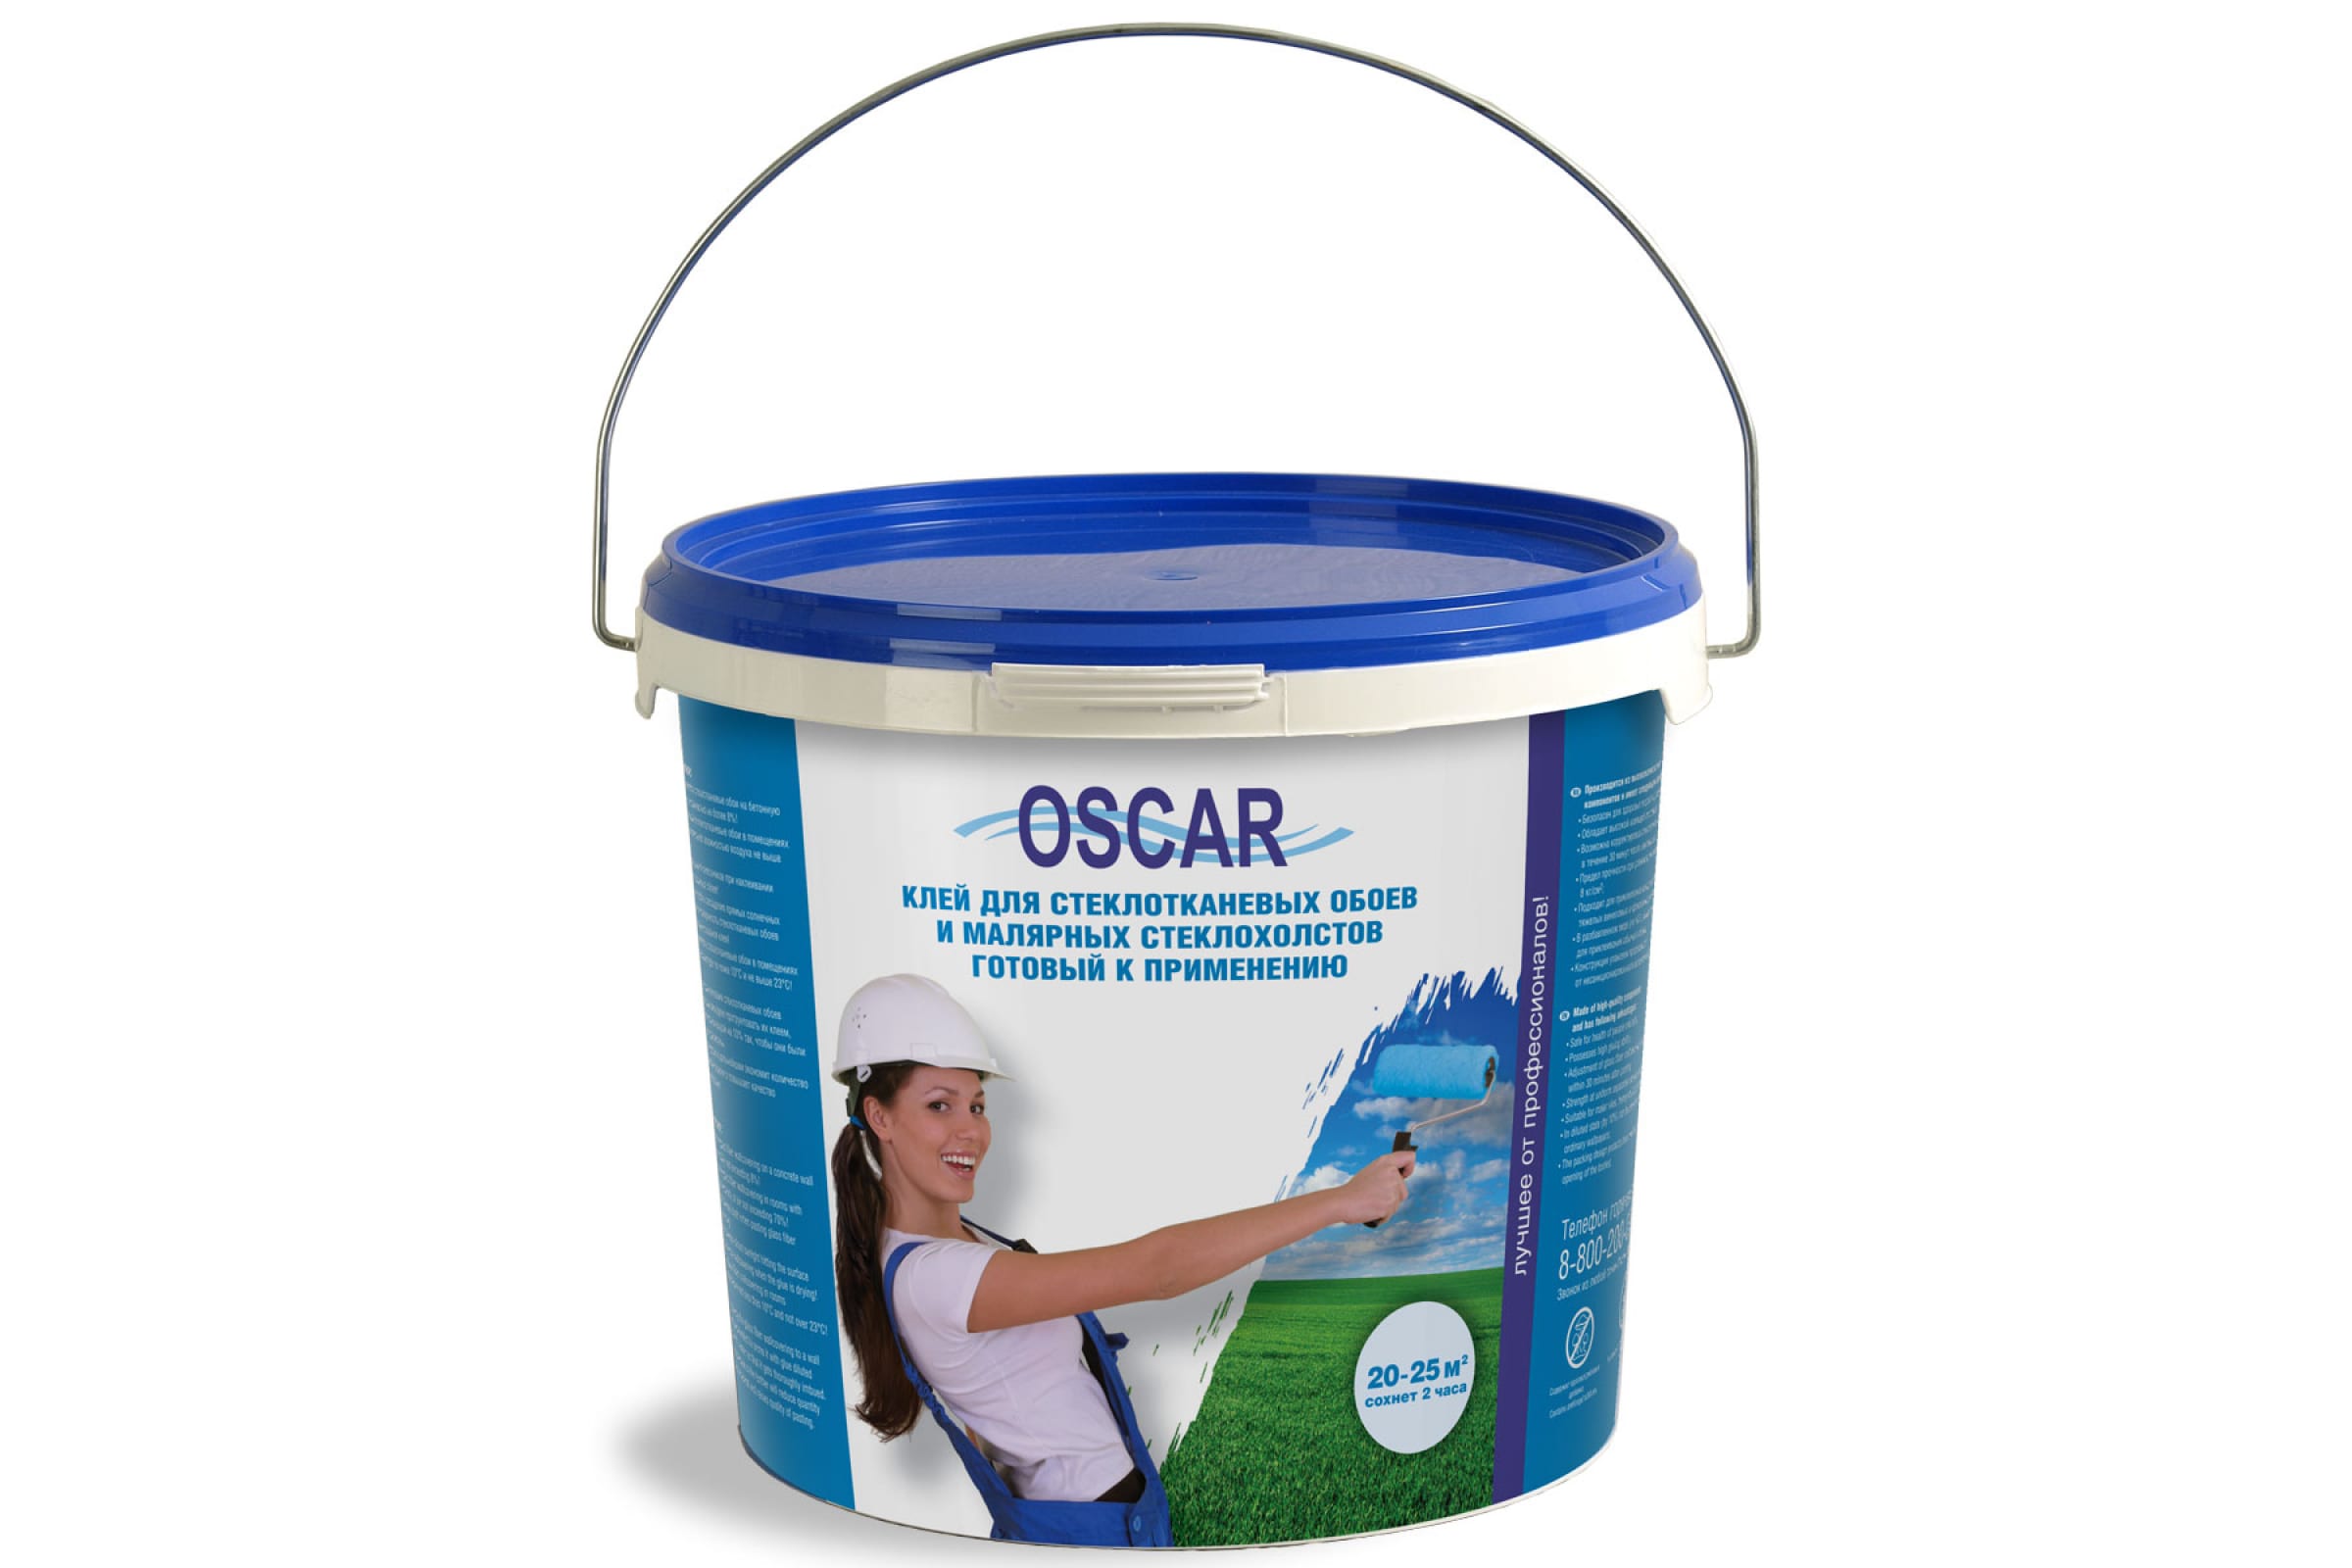 фото Oscar клей для стеклообоев, готовый к применению, ведро 5 кг gos5